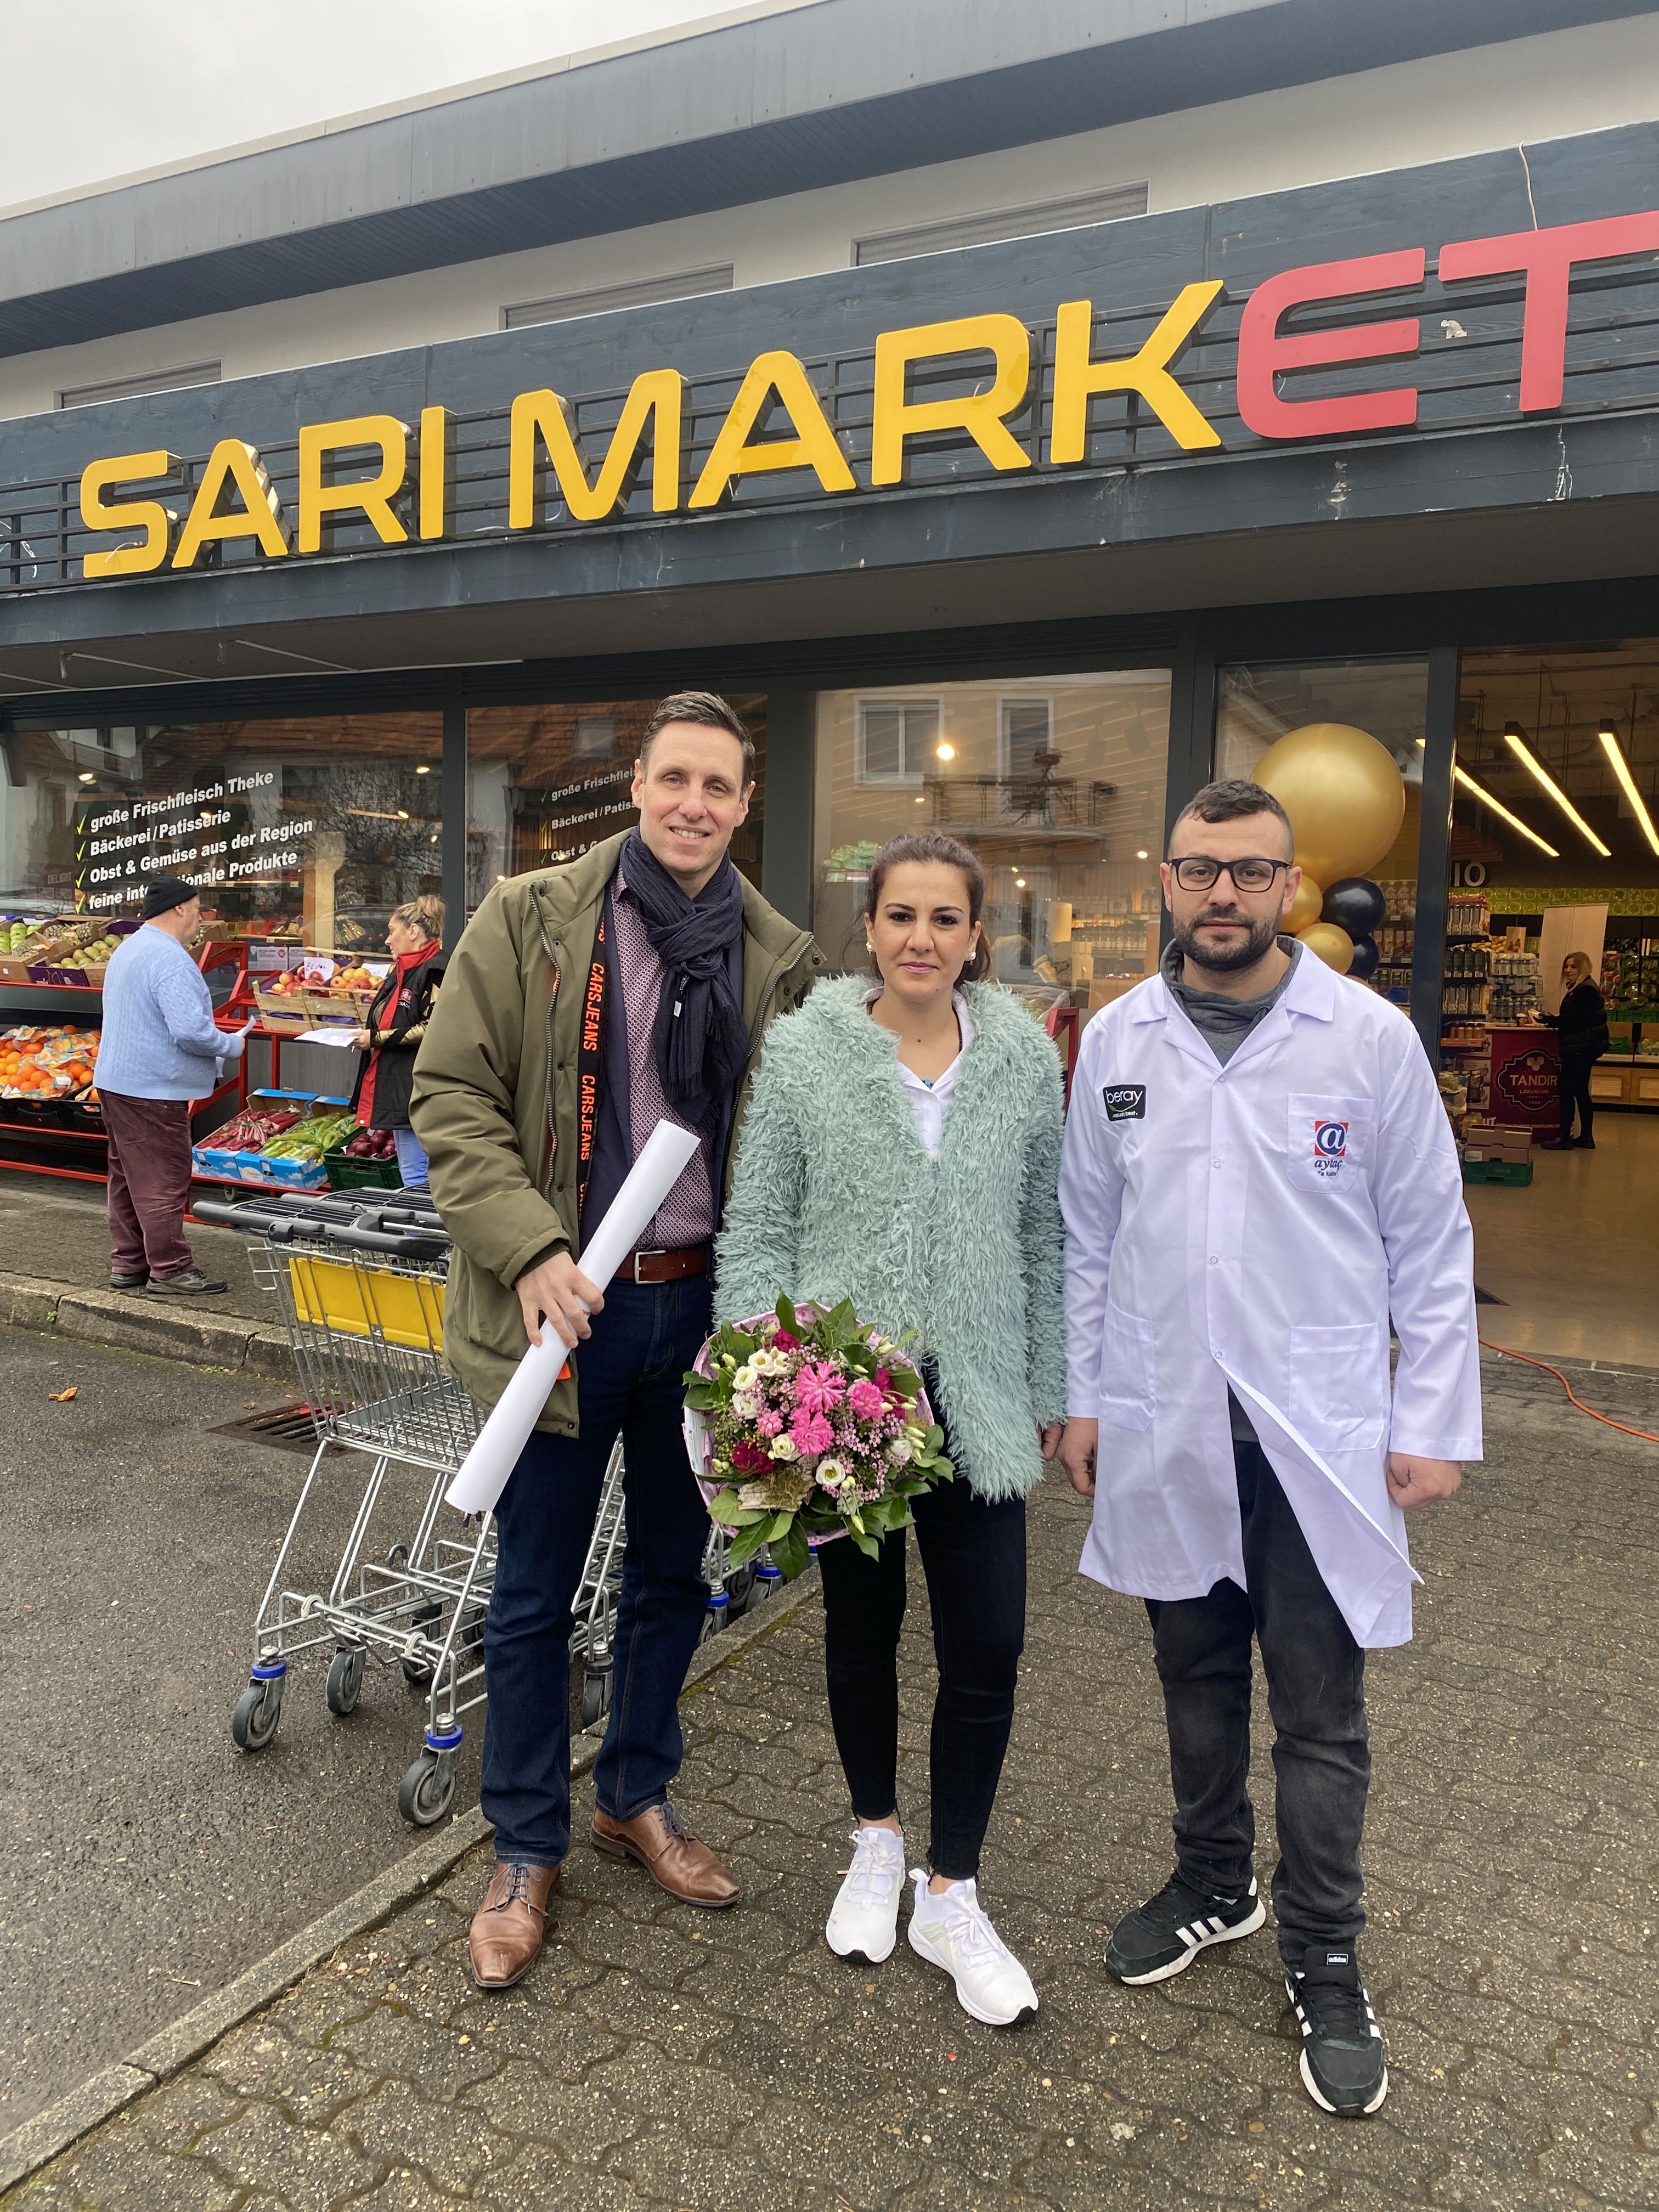 
    
            
                    Bürgermeister Förster überreicht einen Blumenstrauß an Familie Sari, die neuen Geschäftsinhaber des Sari Market
                
        
